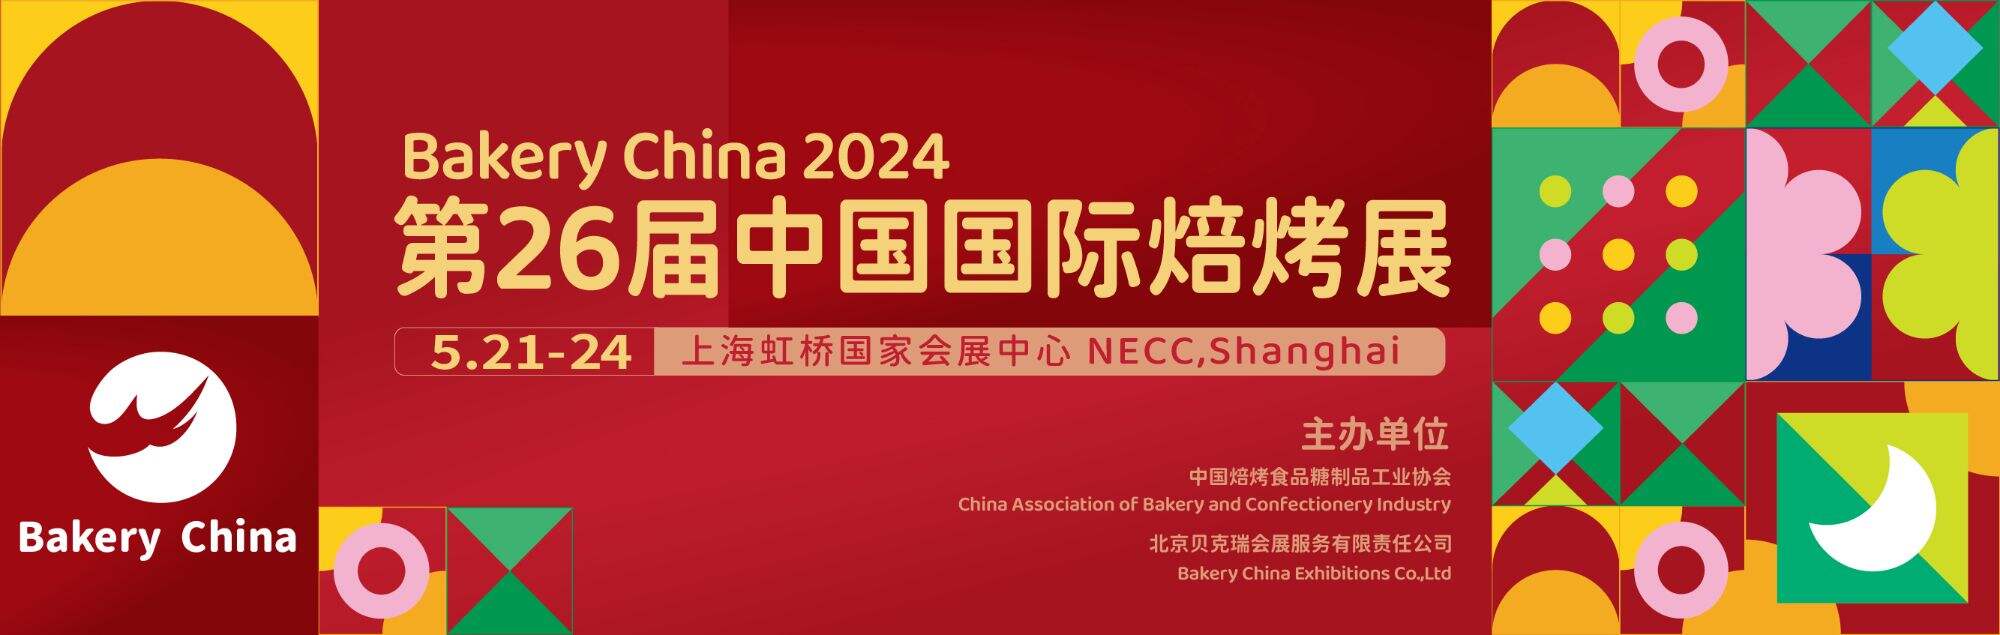 ตัวอย่างนิทรรศการ: Bakery China 2024 21-24 พฤษภาคมที่เซี่ยงไฮ้